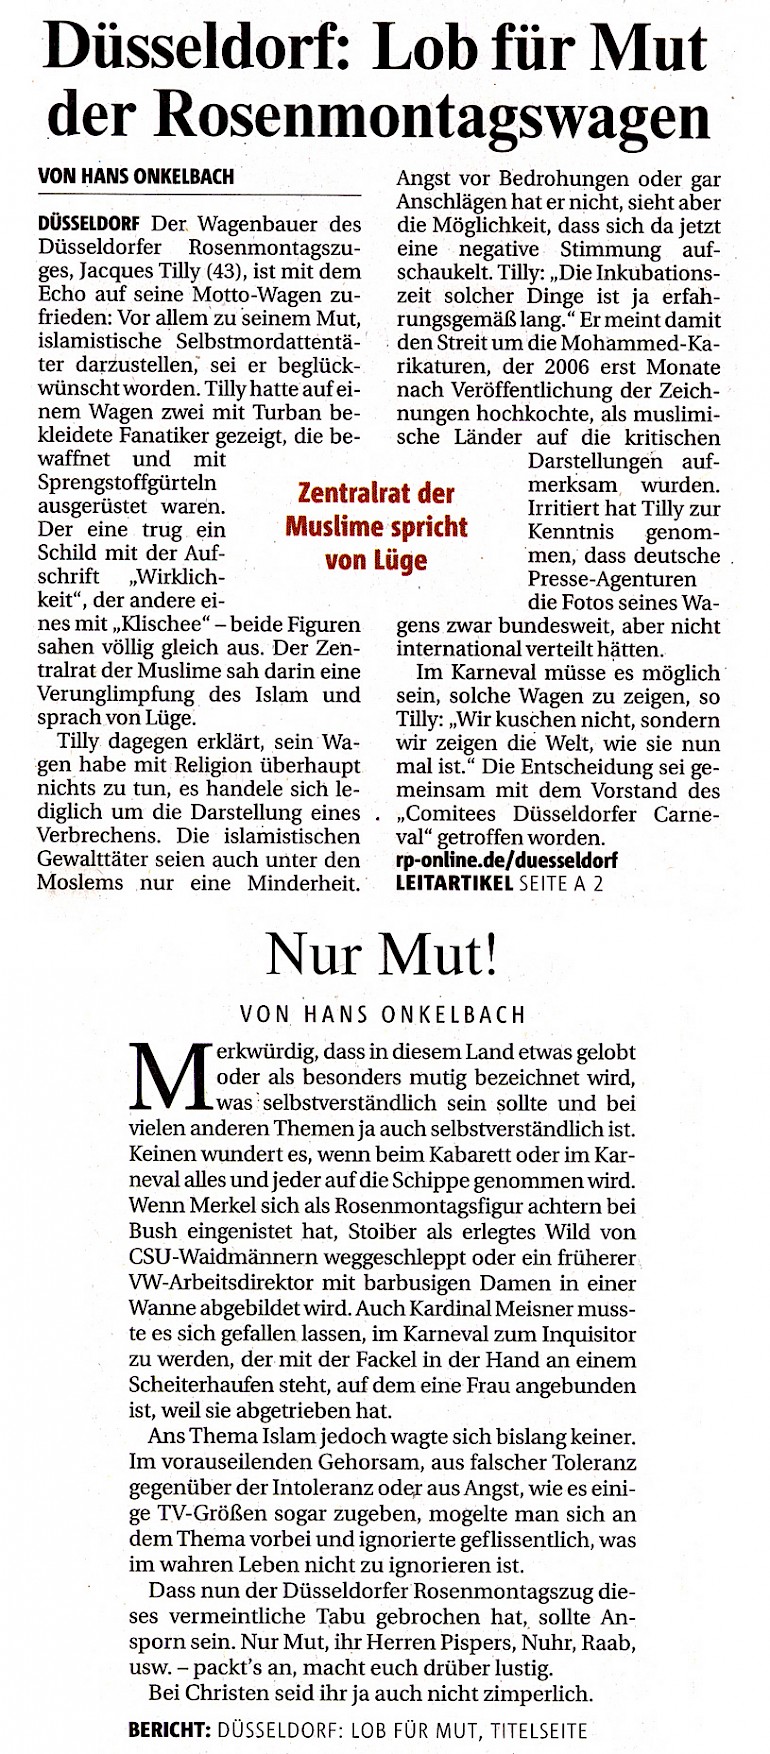 Rheinische Post, 21.2.2007 Artikel im Wortlaut [/pressespiegel/2007/rosenmontag-2007/p-2007-02-21-rp-lob-fuer-mut-txt/]